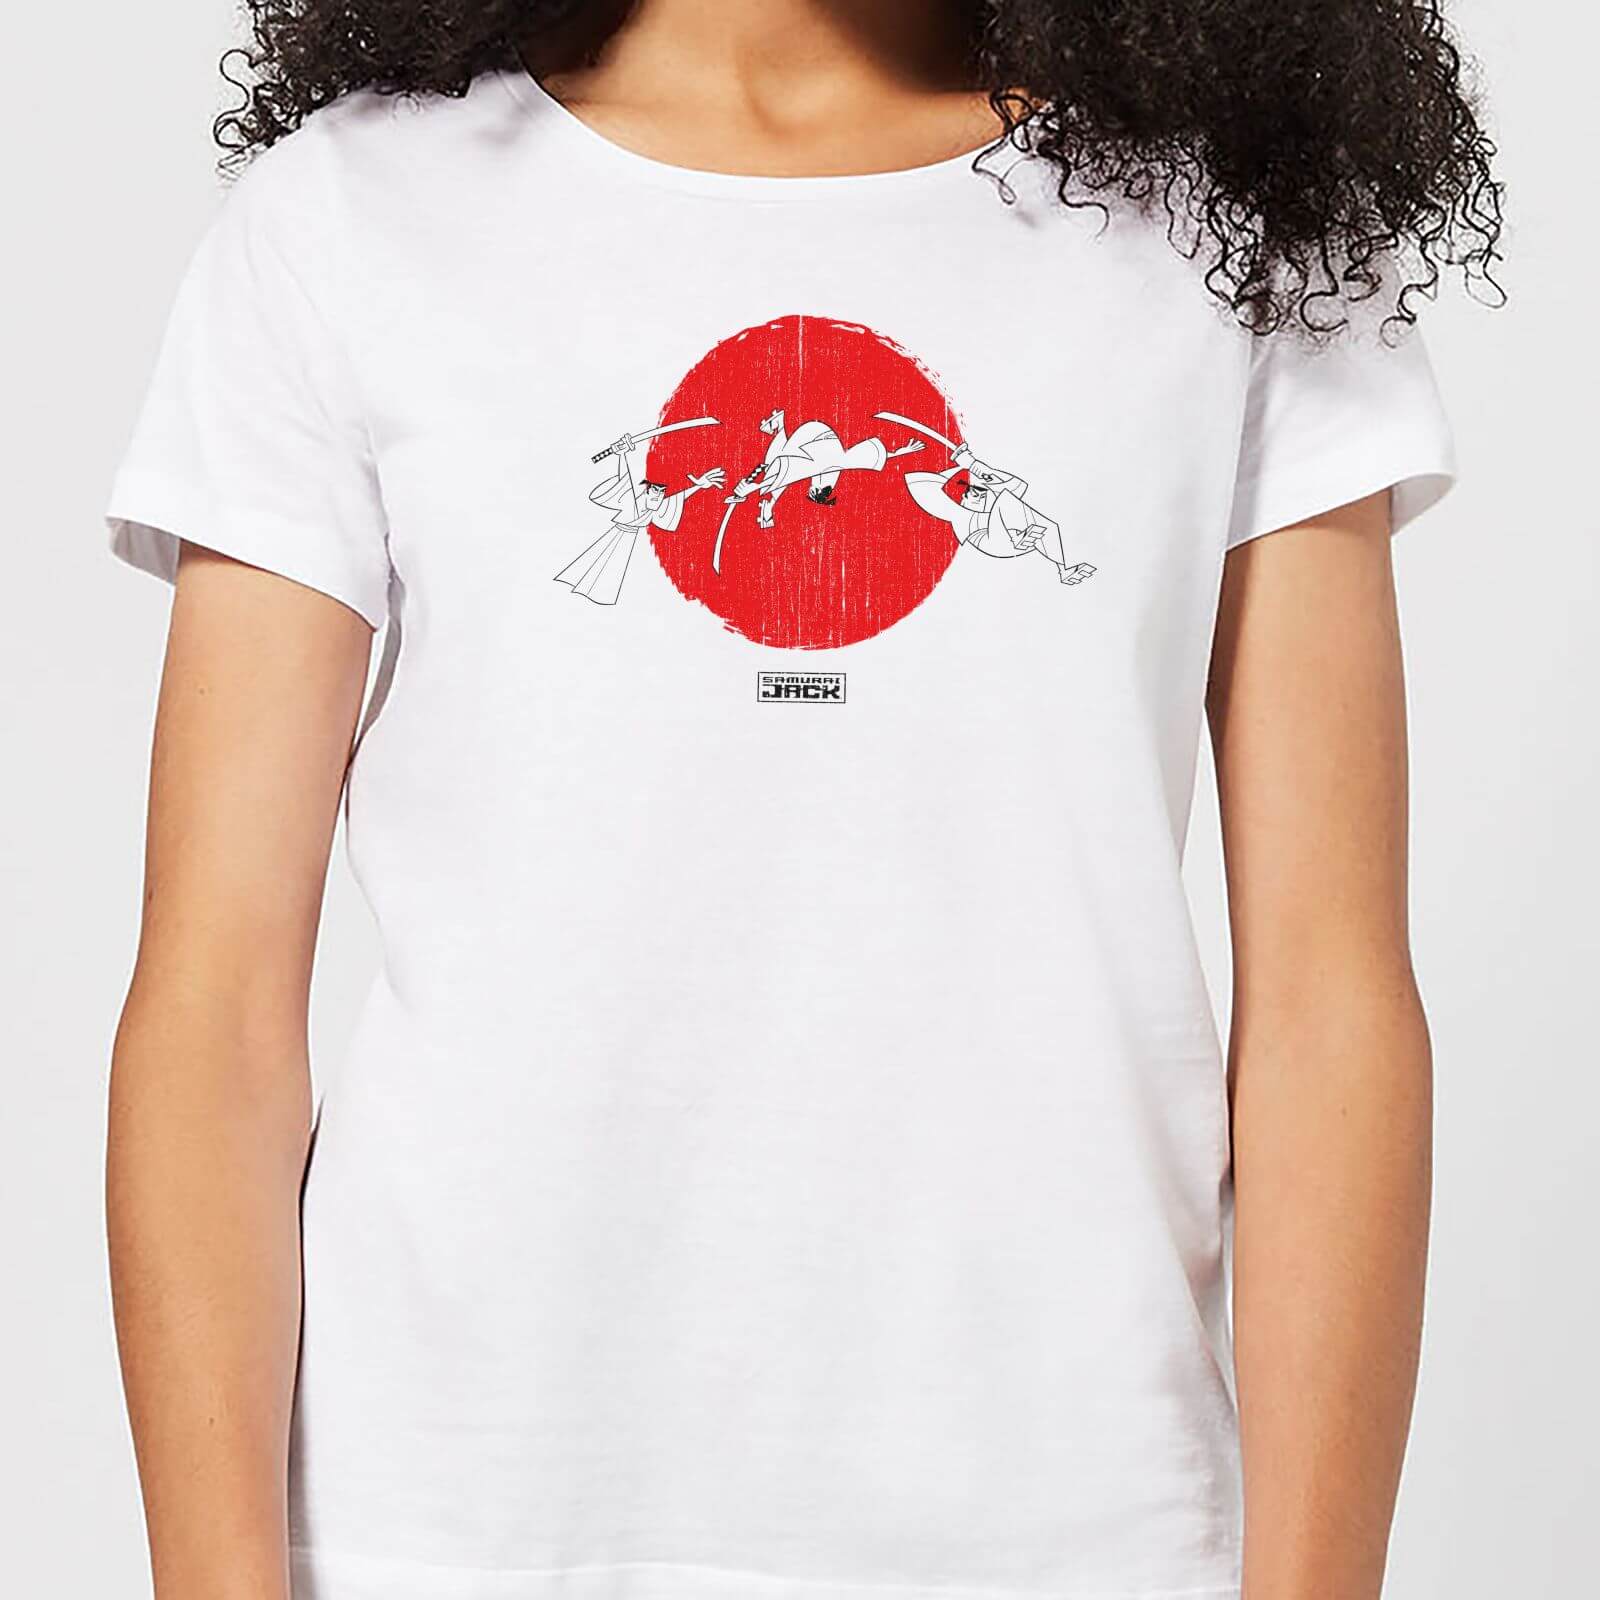 Samurai Jack Sunrise Women's T-Shirt - White - S - White